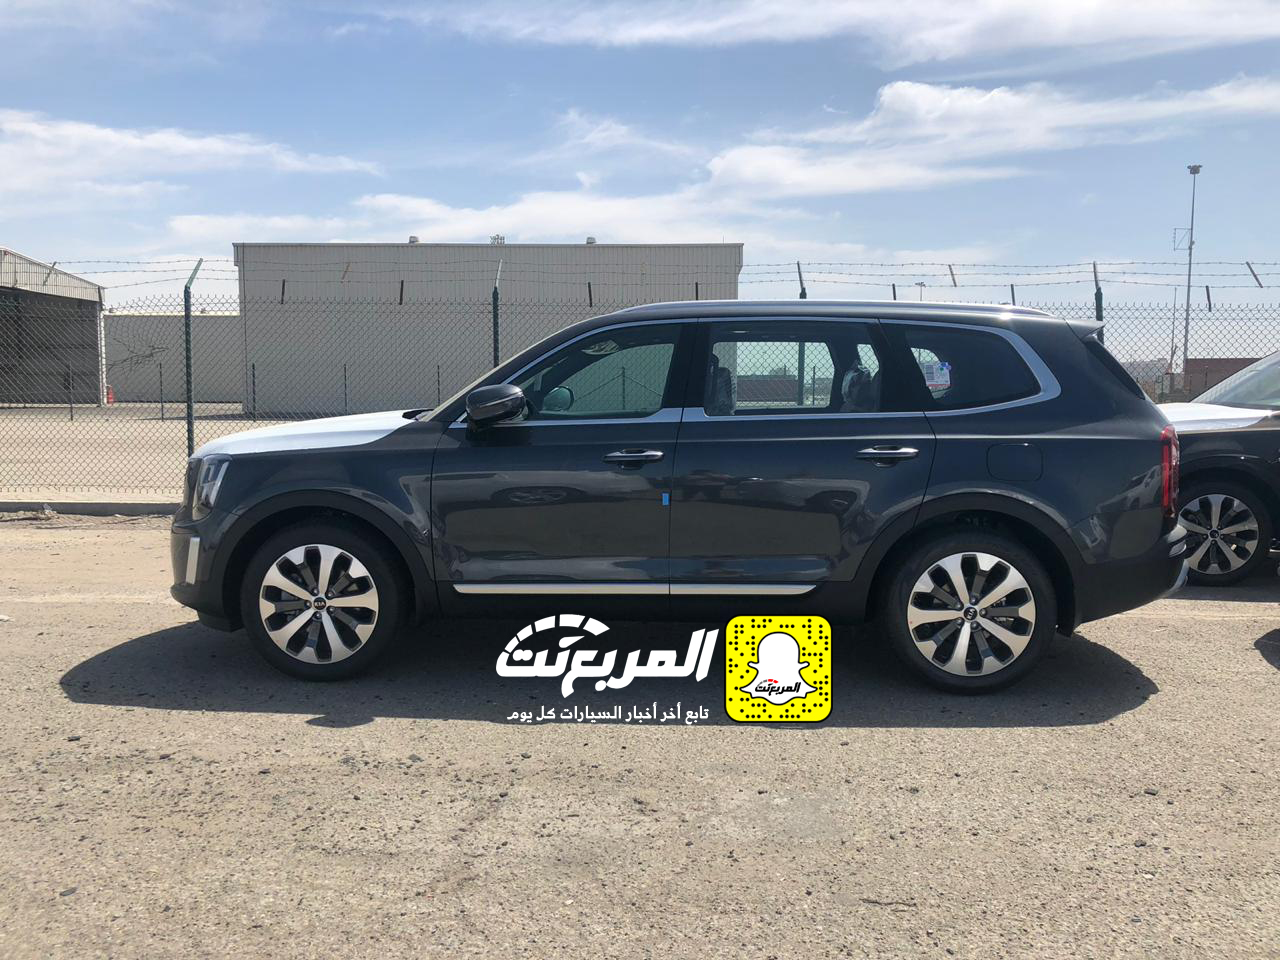 "بالصور" وصول كيا تيلورايد 2020 الجديدة الى السعودية اكبر SUV من كيا + موعد البيع الرسمي 17